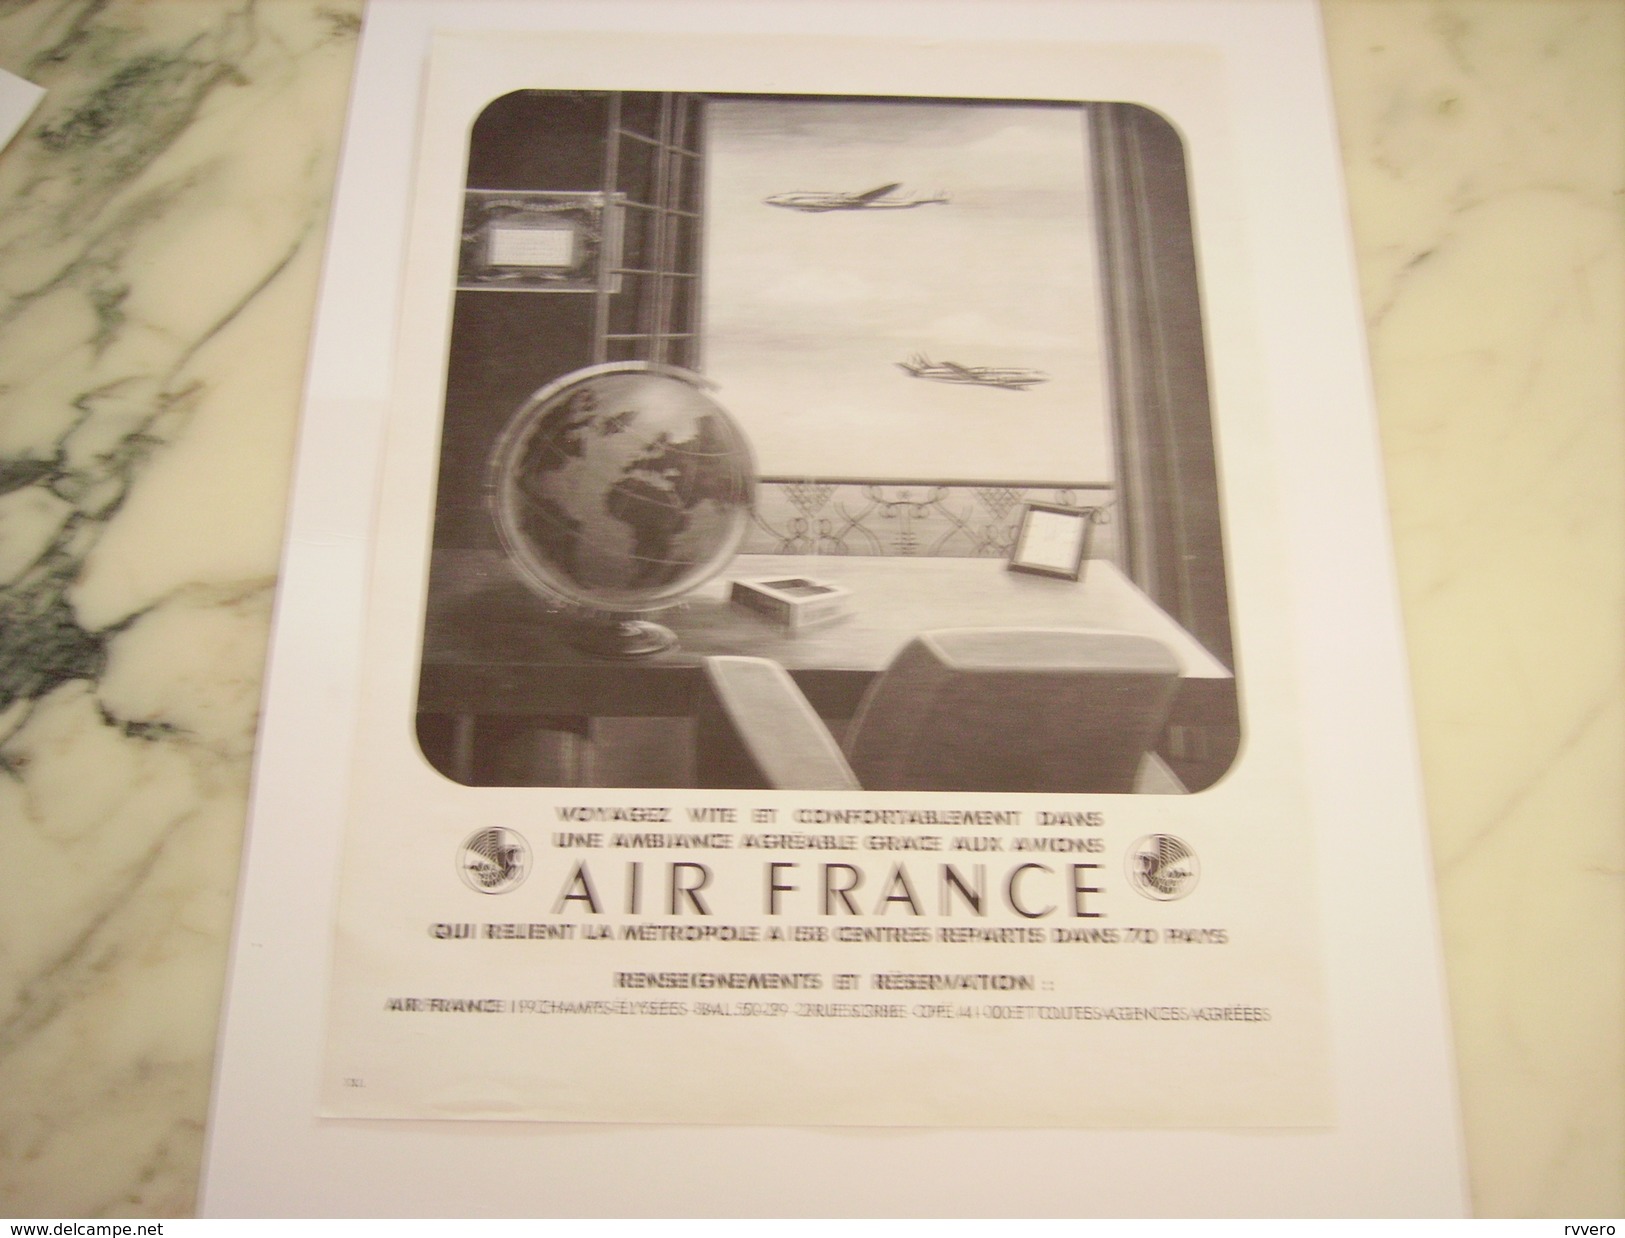 ANCIENNE PUBLICITE AIR FRANCE  1949 - Publicités